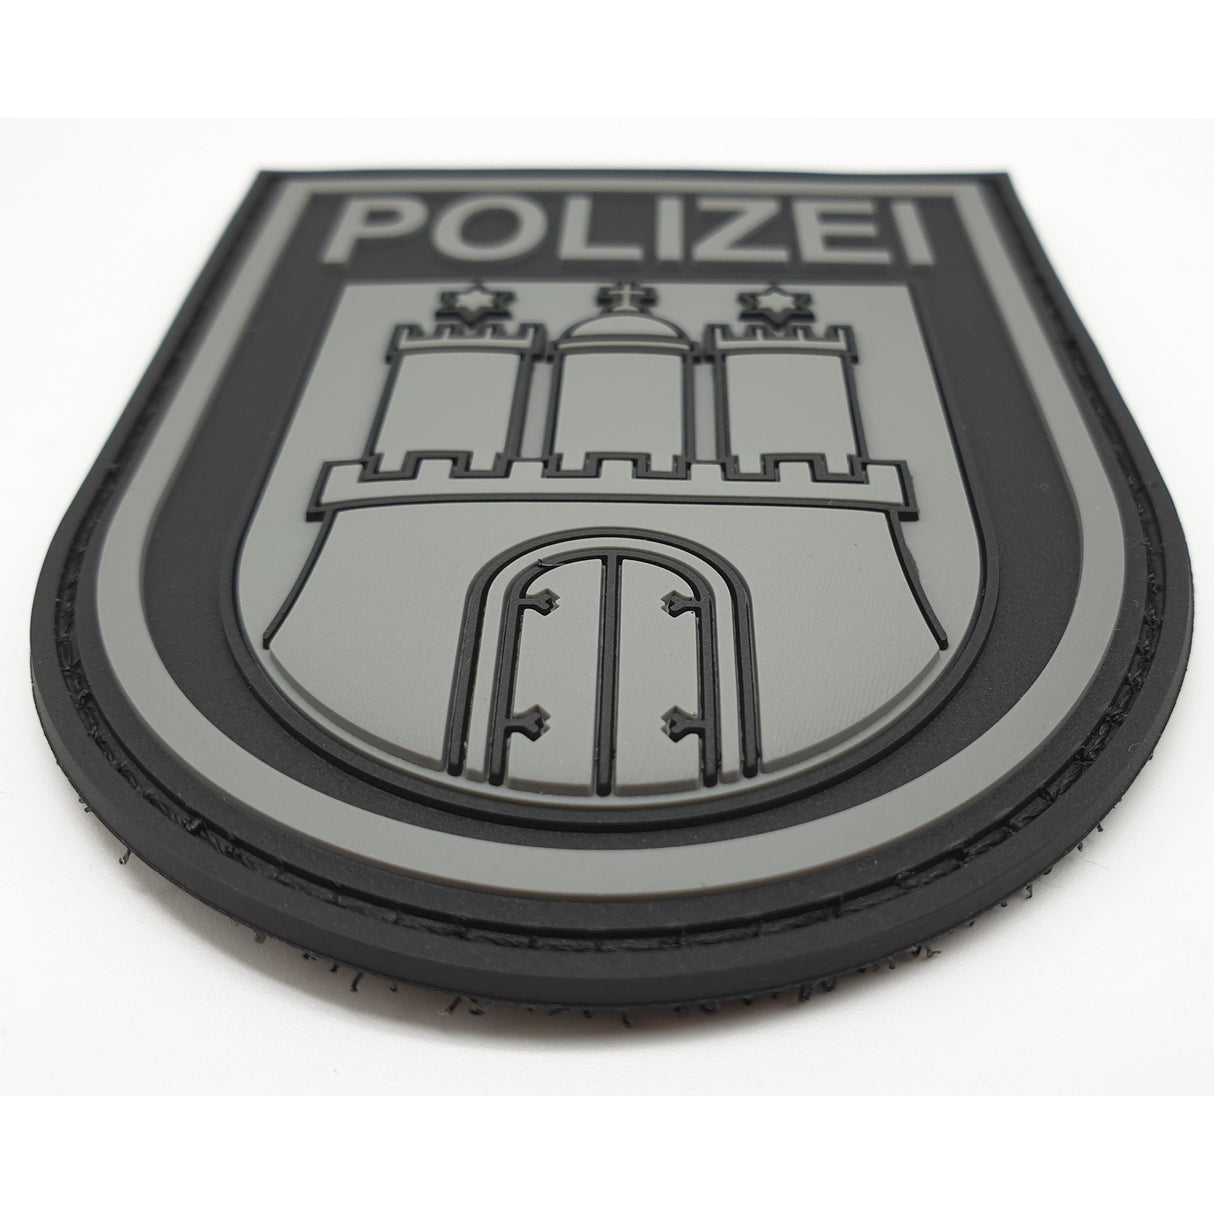 Polizei Hamburg "Black Ops" Patch - Polizeimemesshop